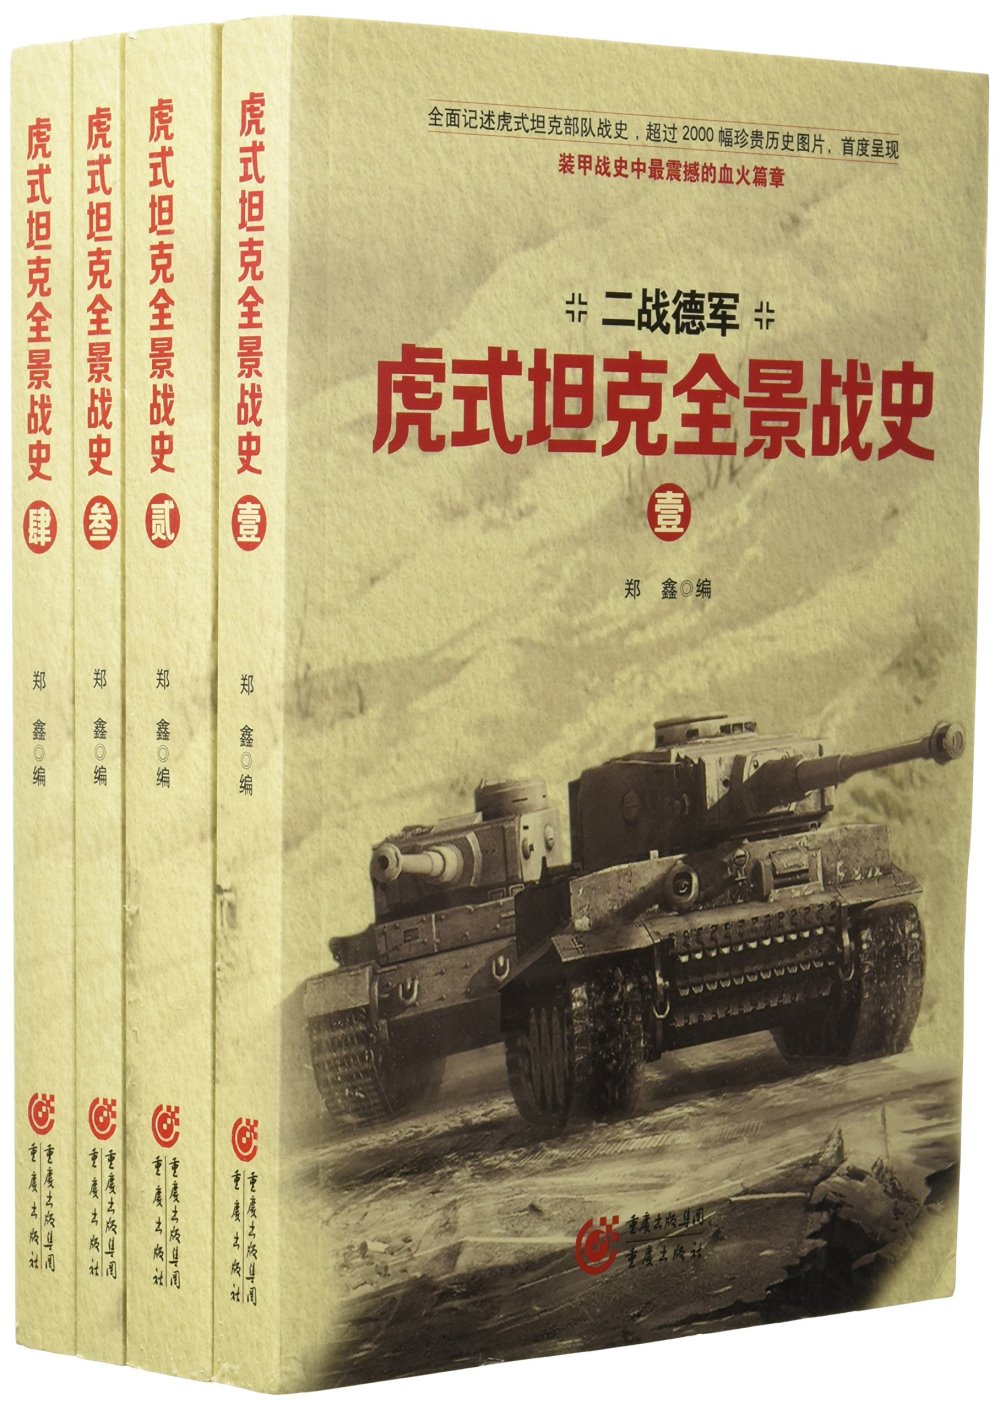 虎式坦克全景戰史(全四卷)